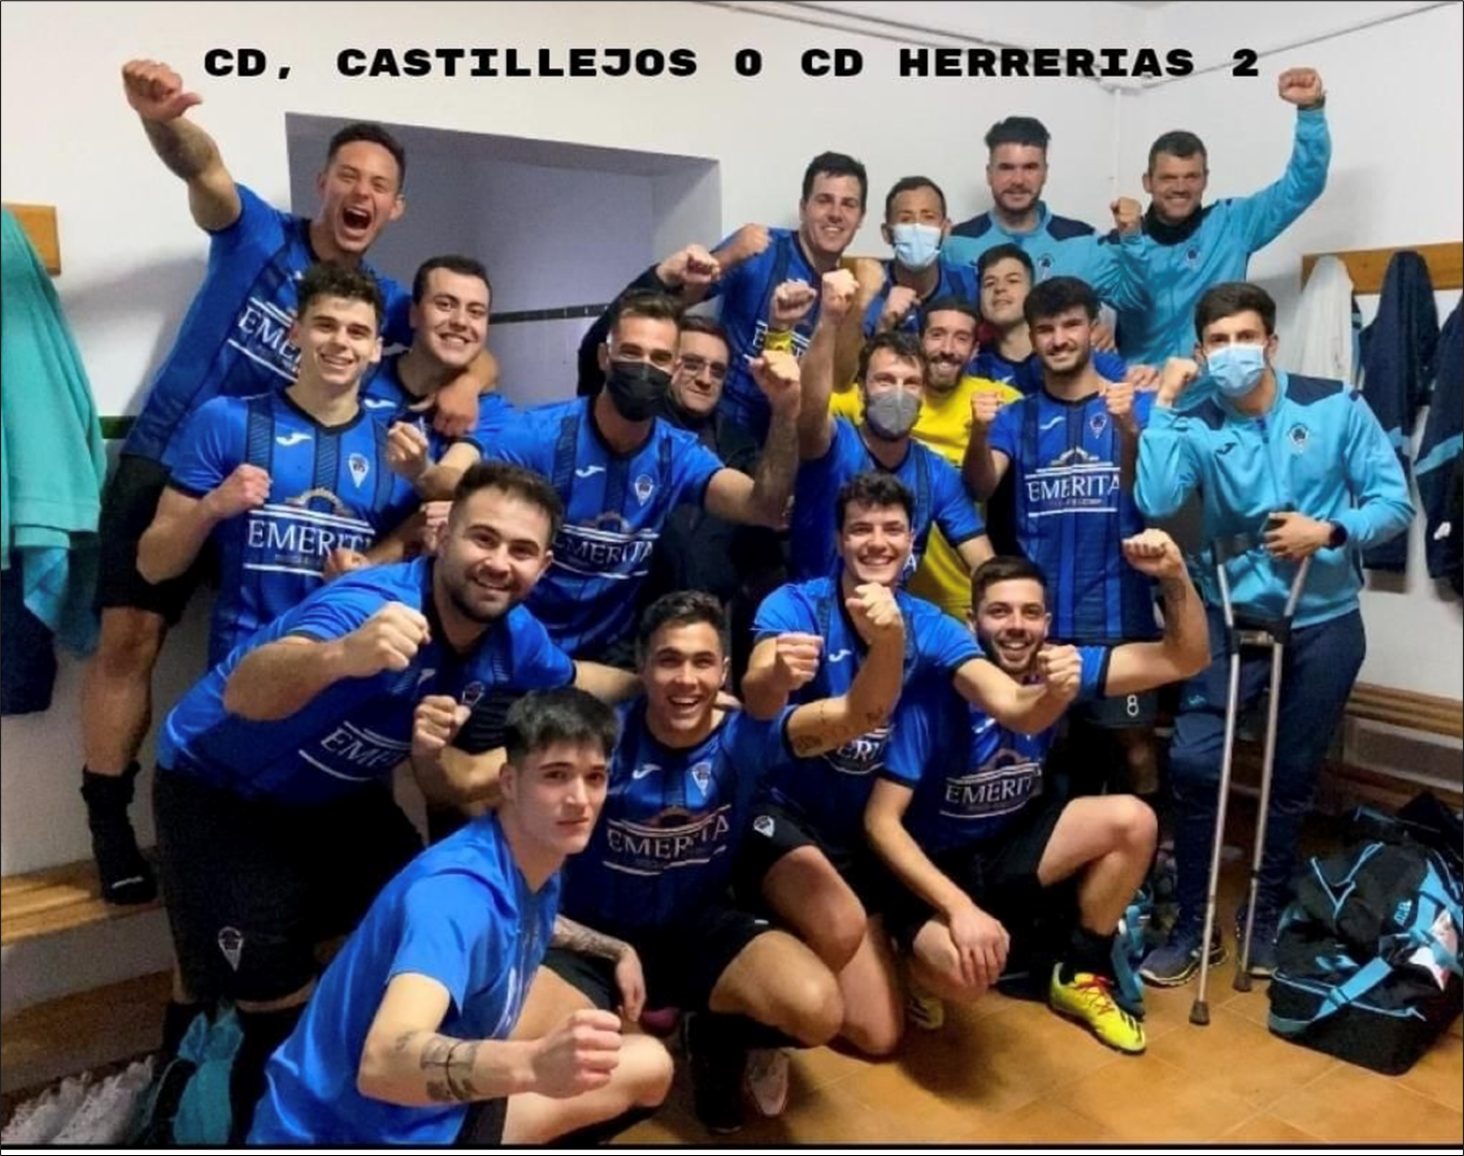 Herrerias Soccer Team